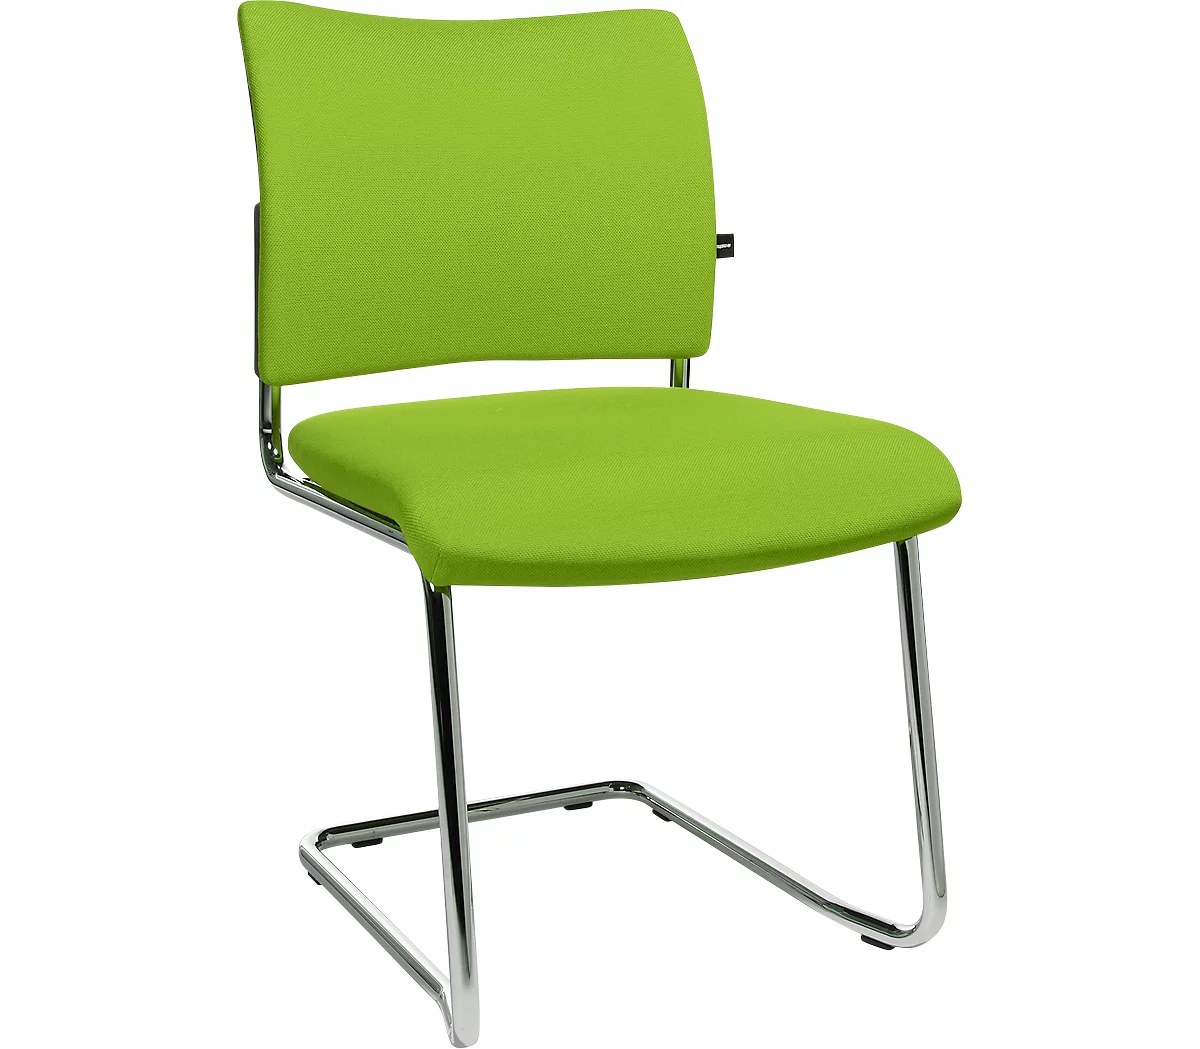 Silla cantilever SEAT POINT, acolchado, sin reposabrazos, apilable, juego de 2, verde